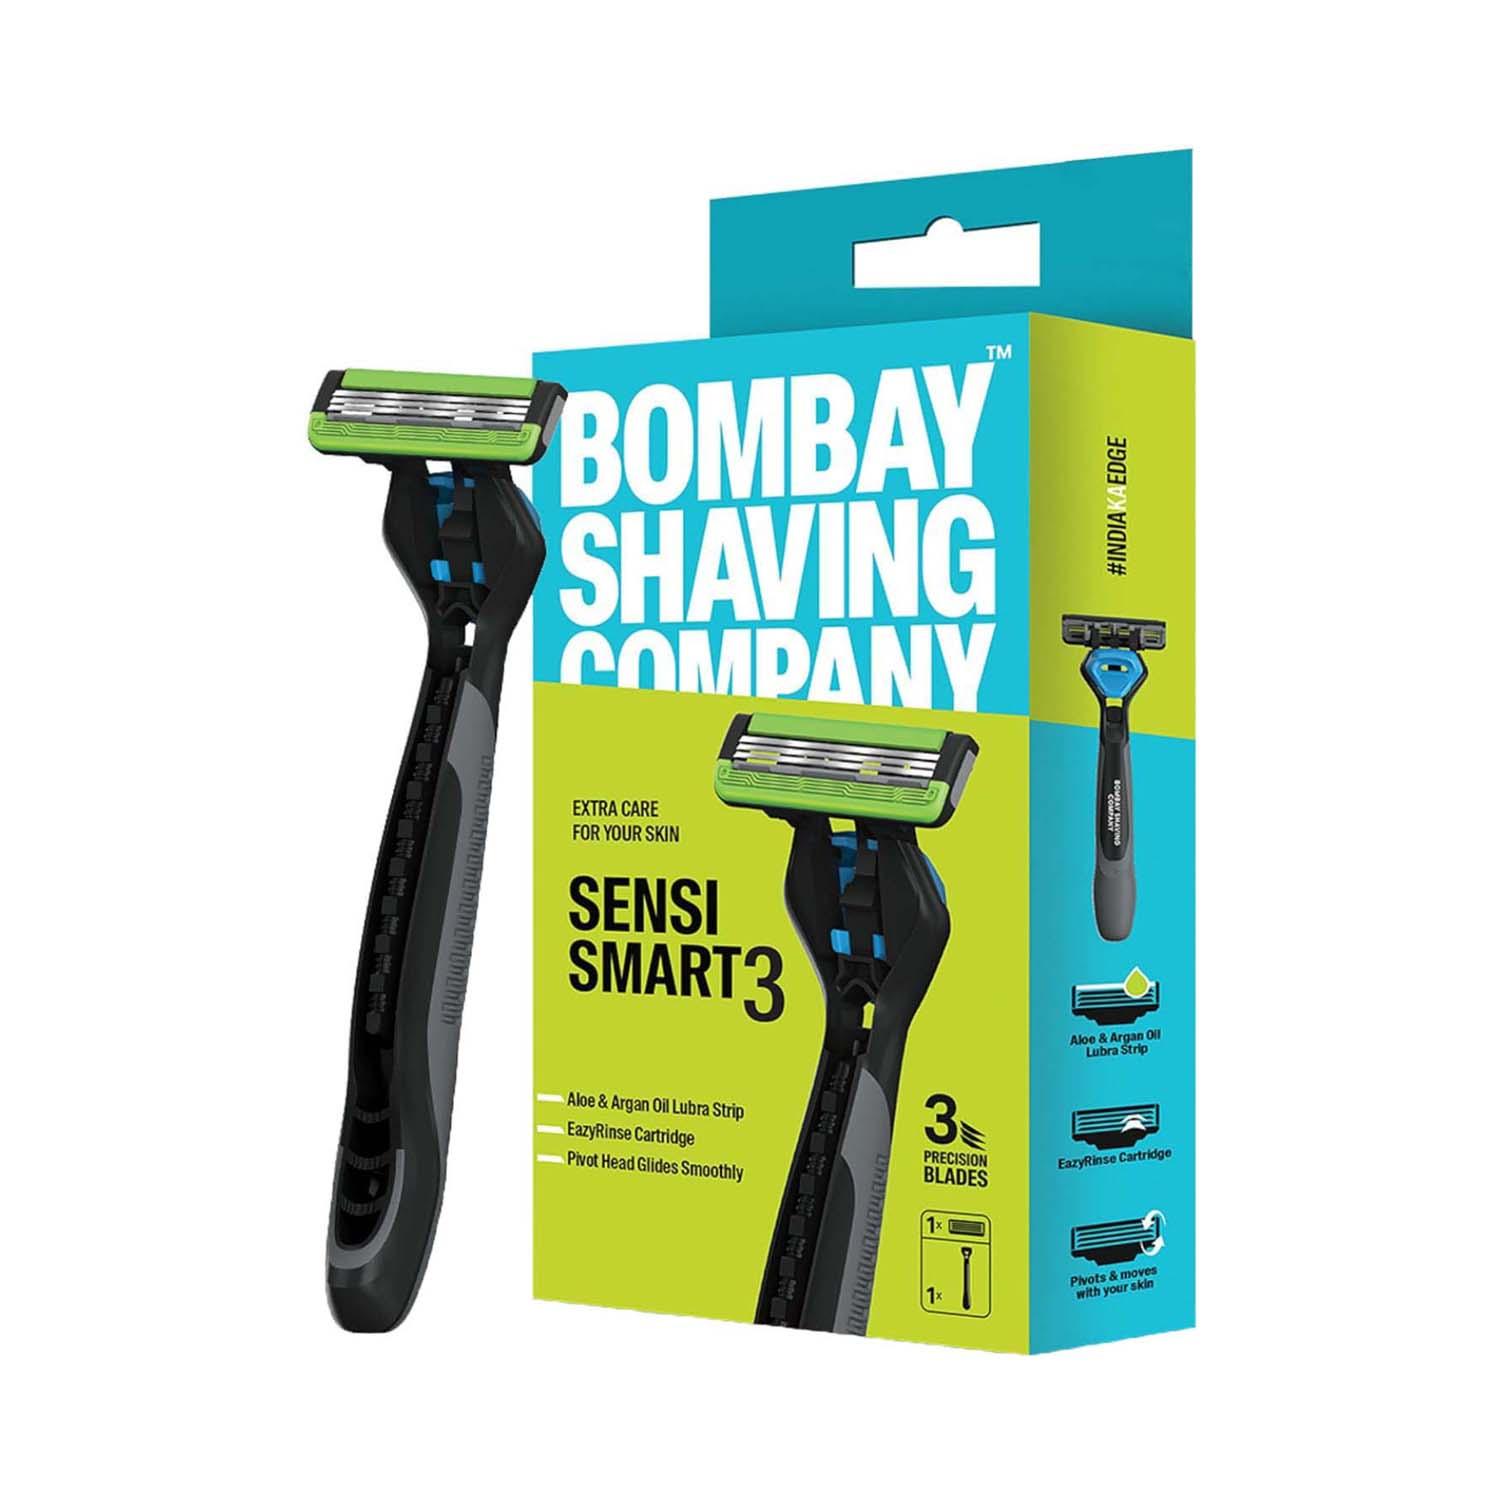 Bombay Shaving Company Sensi Smart 3 Razor For Men